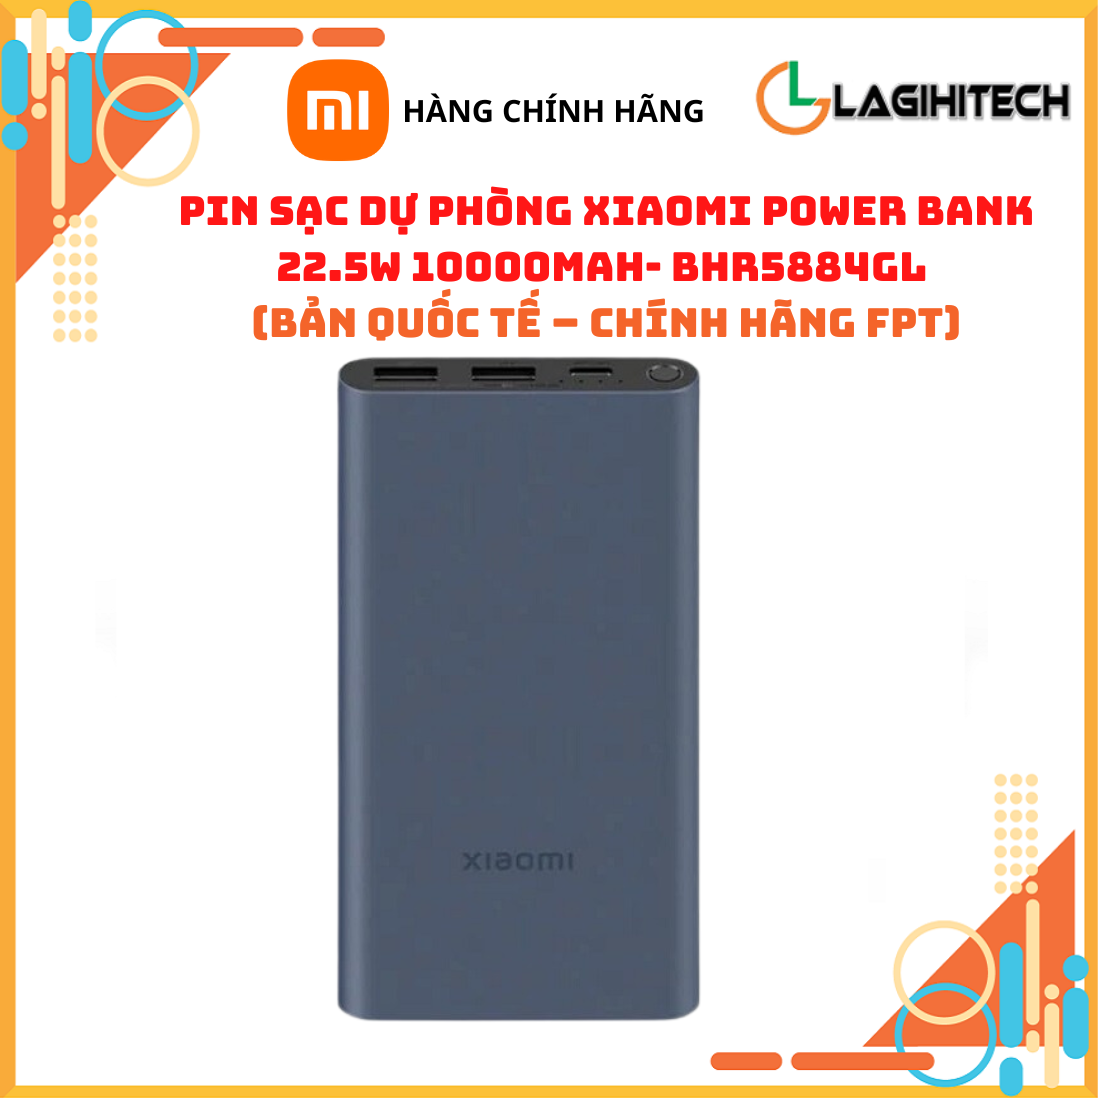 Hình ảnh Pin Sạc Dự Phòng Xiaomi Power Bank Pocket Edition Pro 33W 10000mAh / 22.5W 10000mAh Bản Quốc Tế – Hàng Chính Hãng FPT